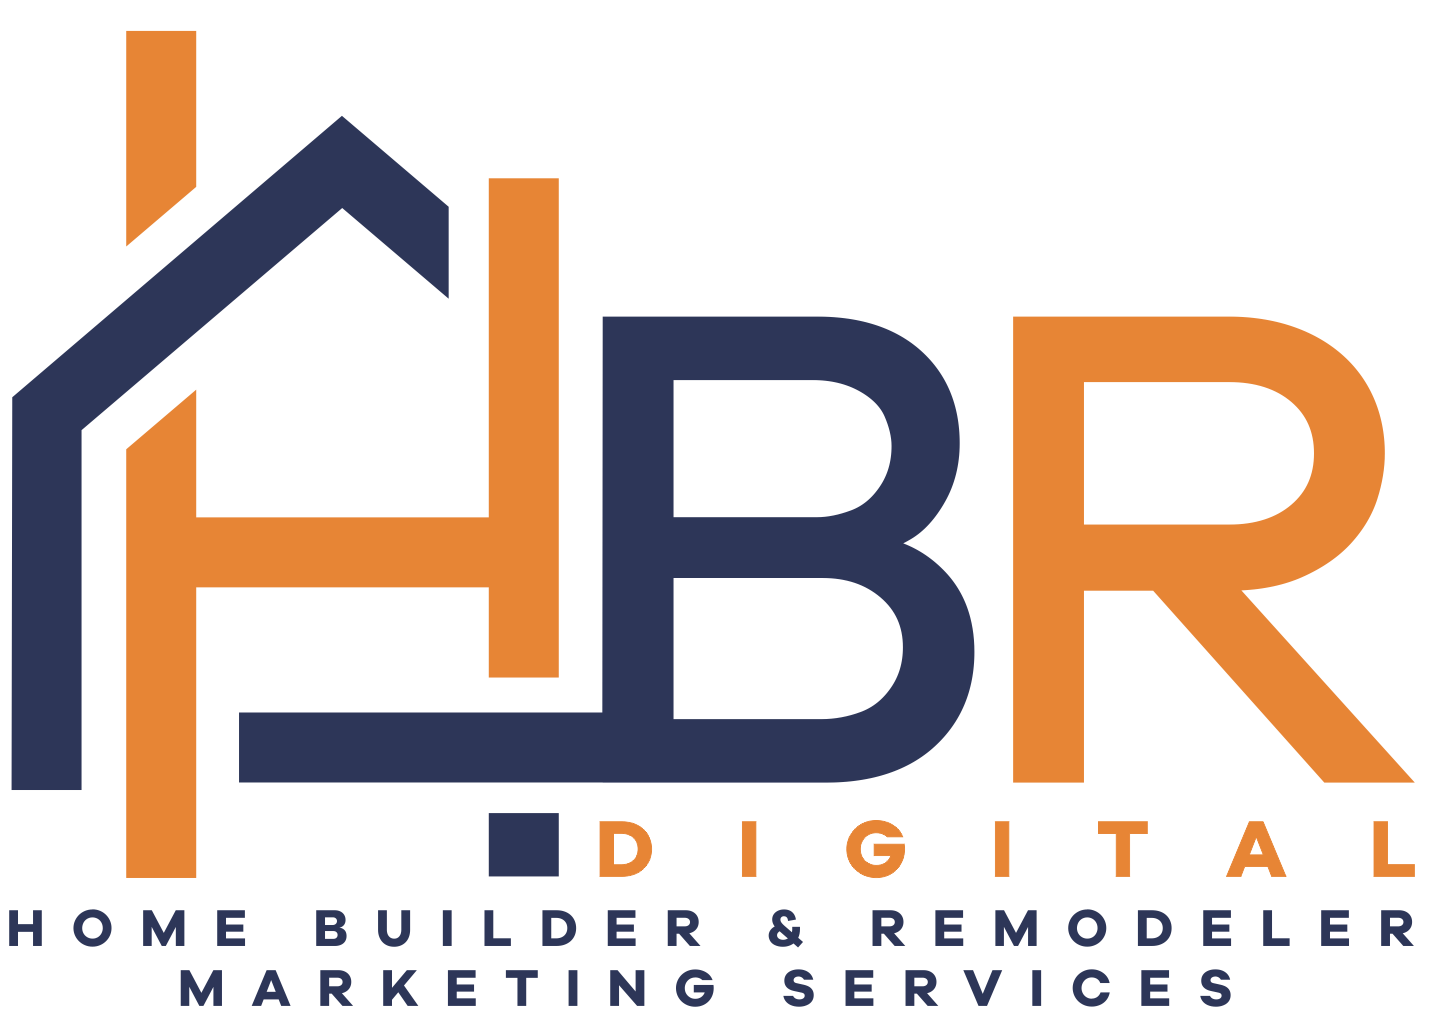 HBR Digital Logo - Home Builder & Remodeler Marketing Services